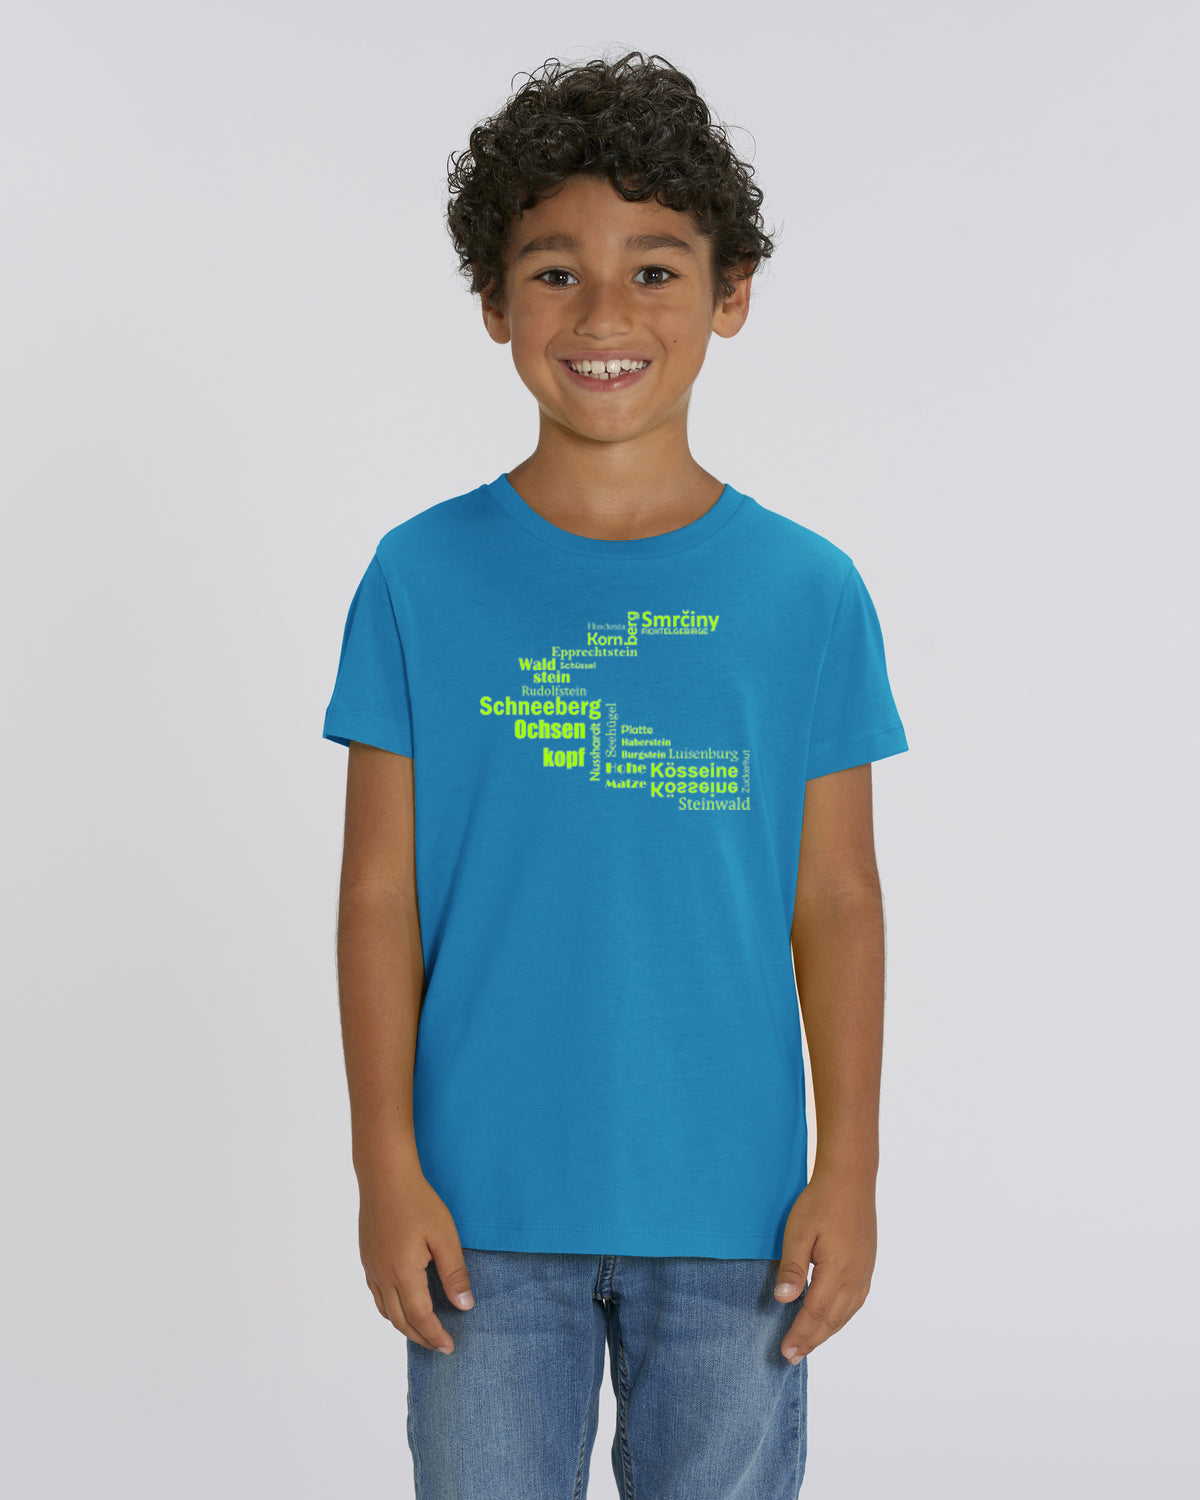 "Hufeisen - Fichtelsachen" - ICONIC BIO T-Shirt Kids